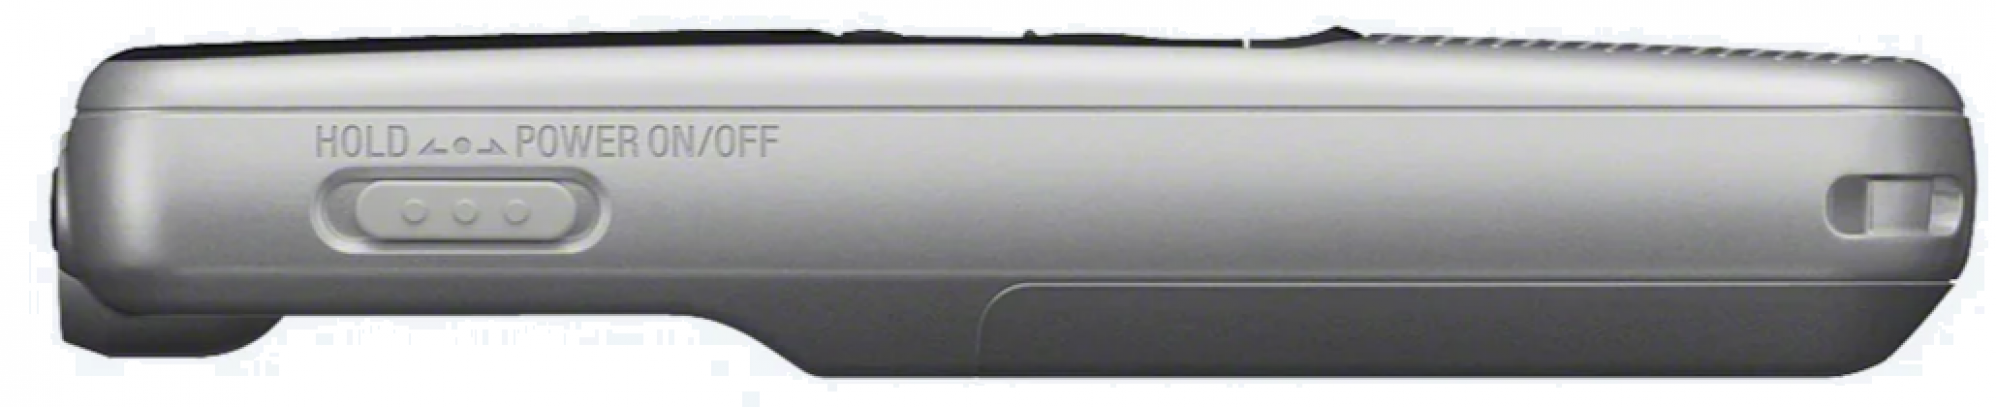 Диктофон Sony ICD-BX140